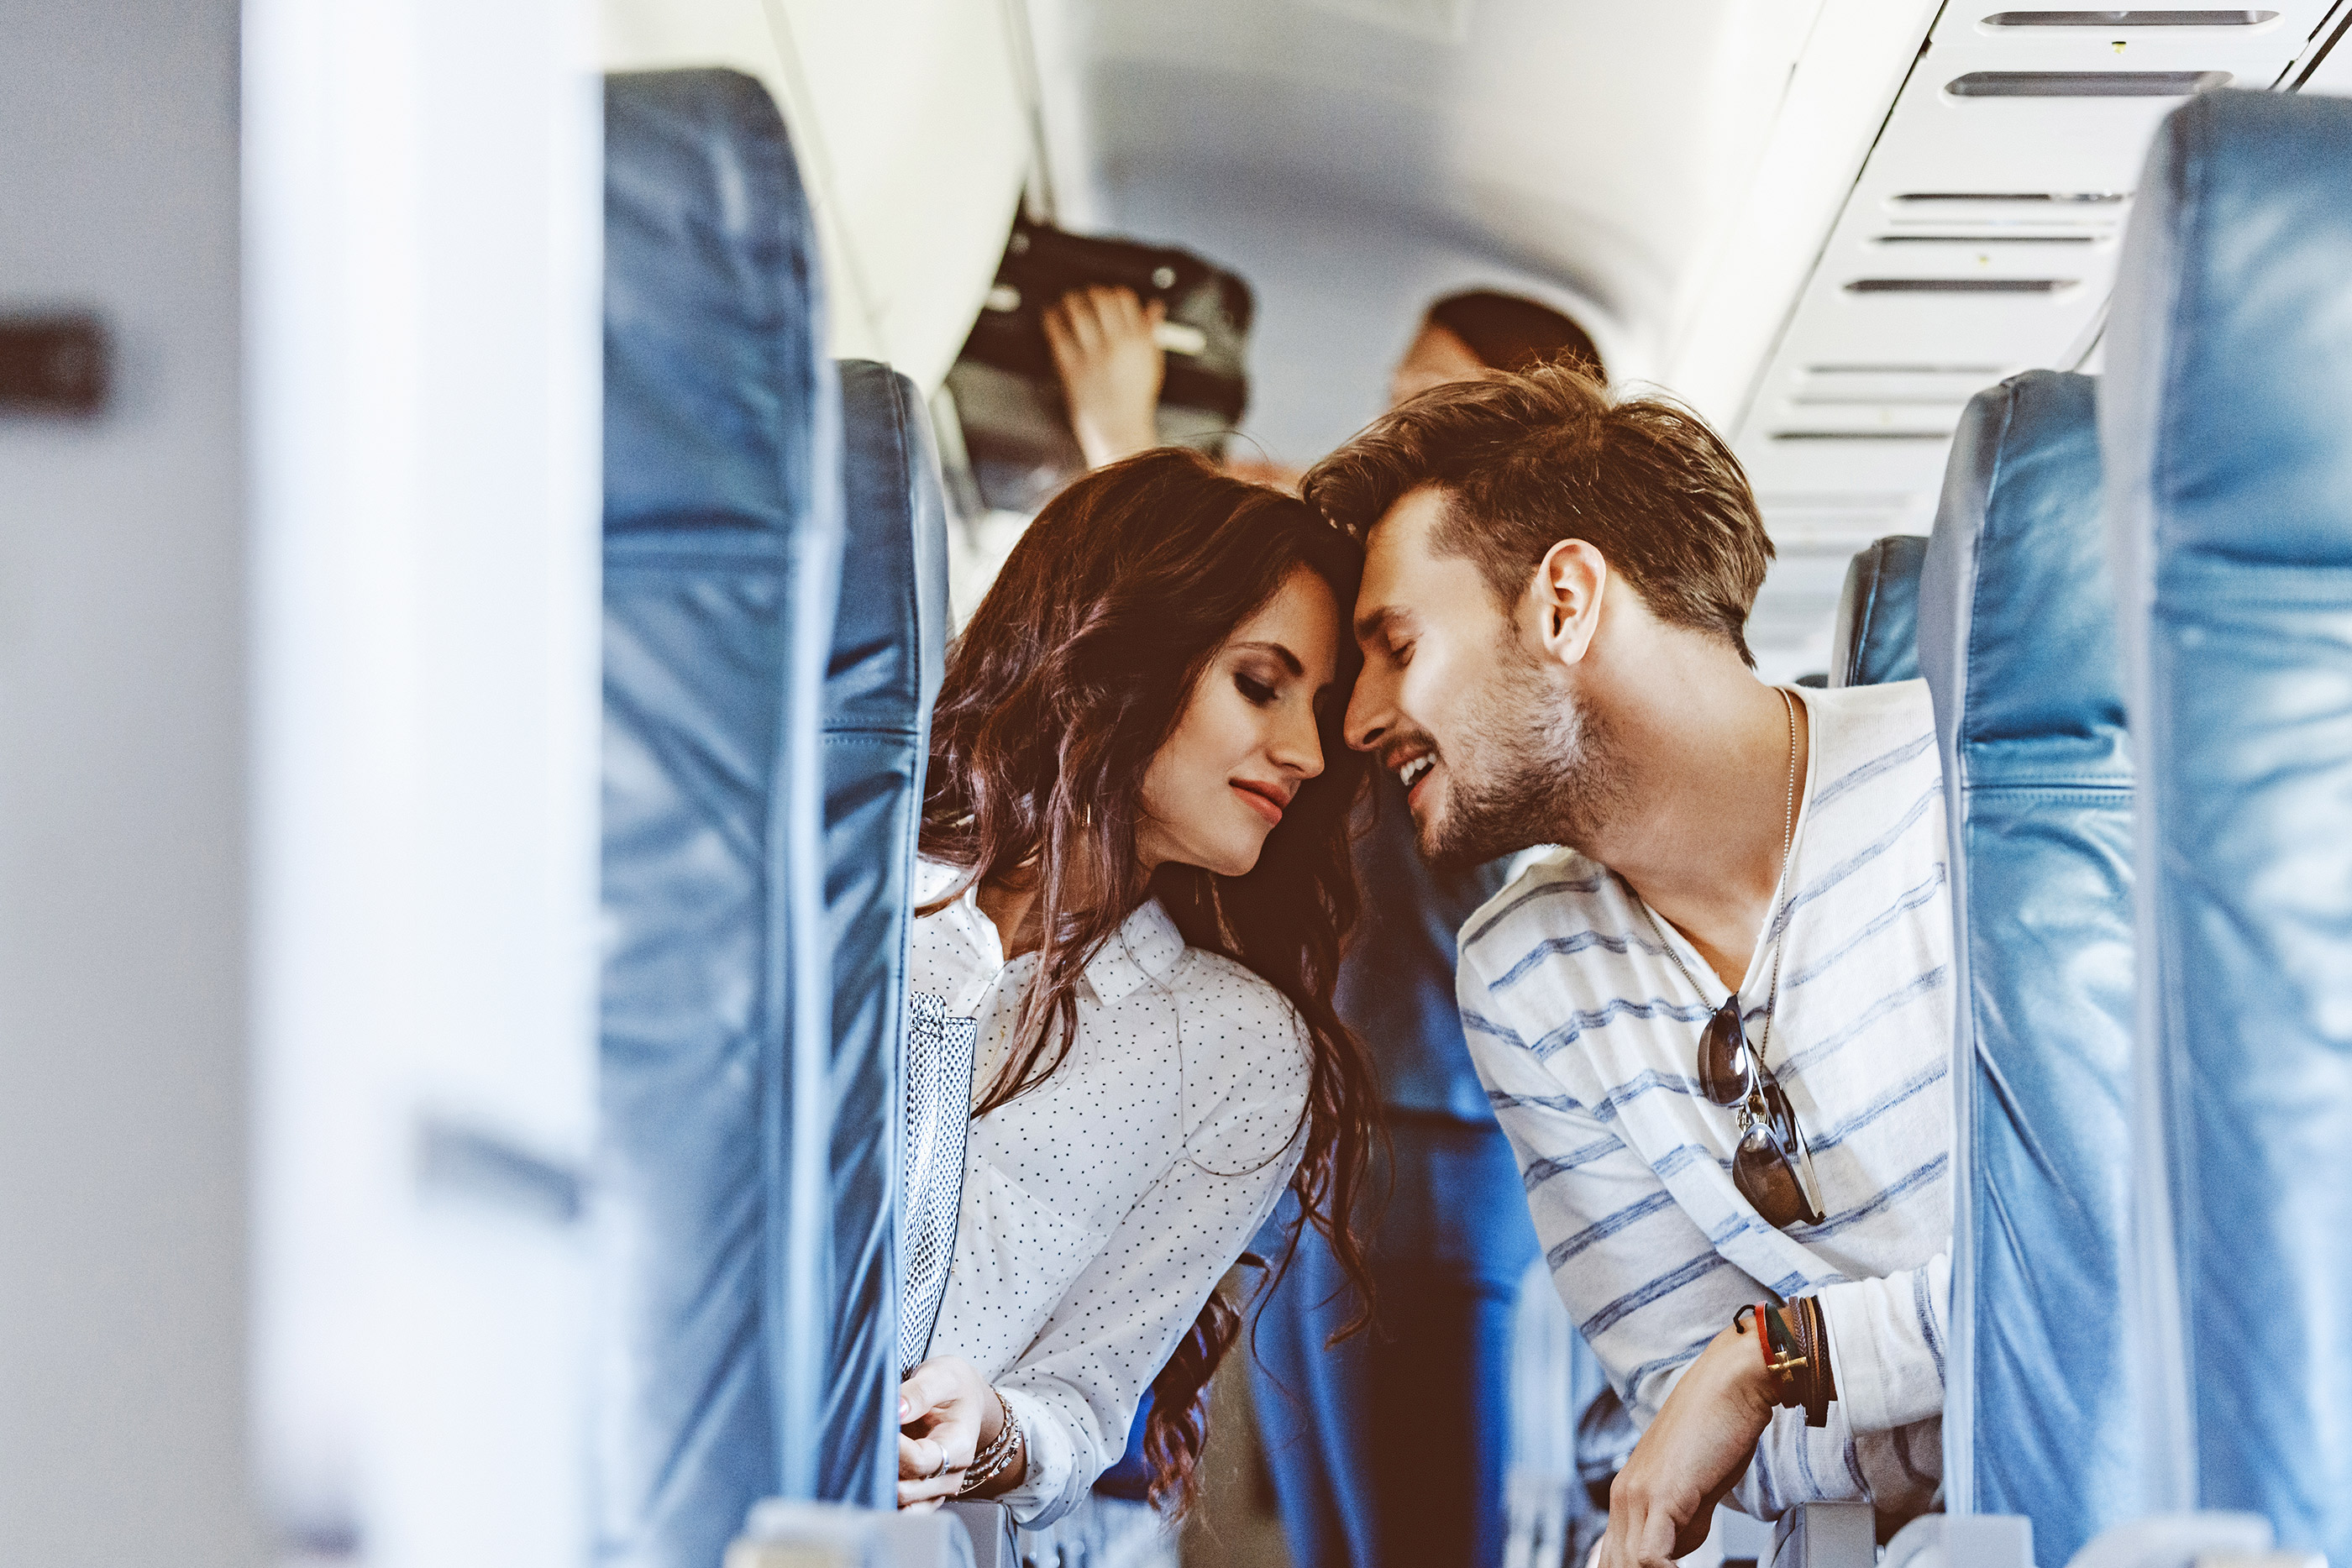 Секс на высоте: как правильно заниматься «этим» в самолете